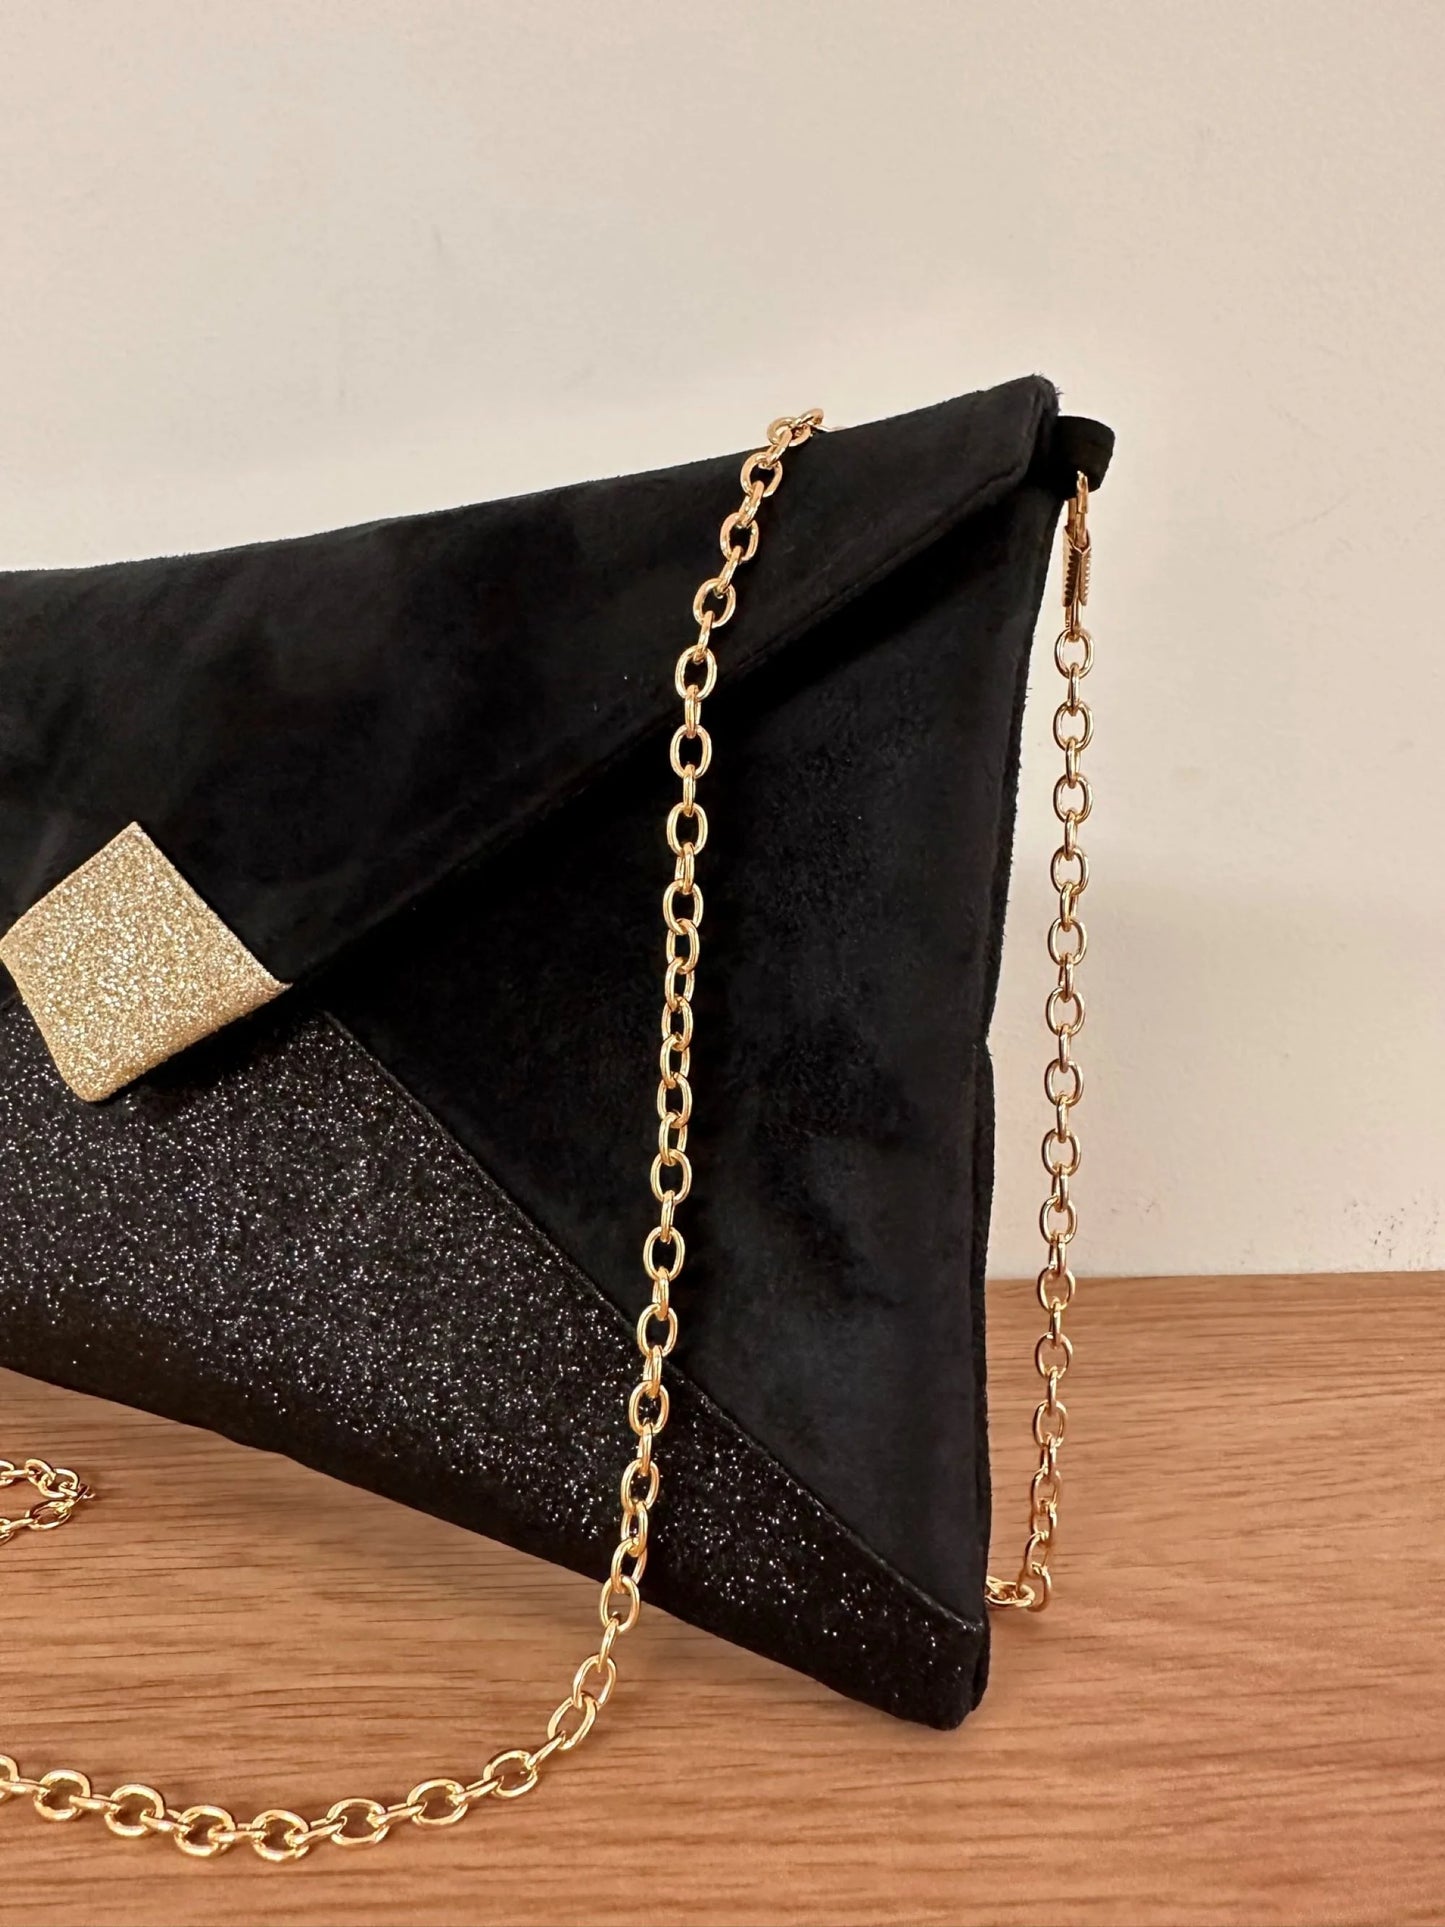 Vue de détail de la chainette dorée amovible du sac pochette Isa